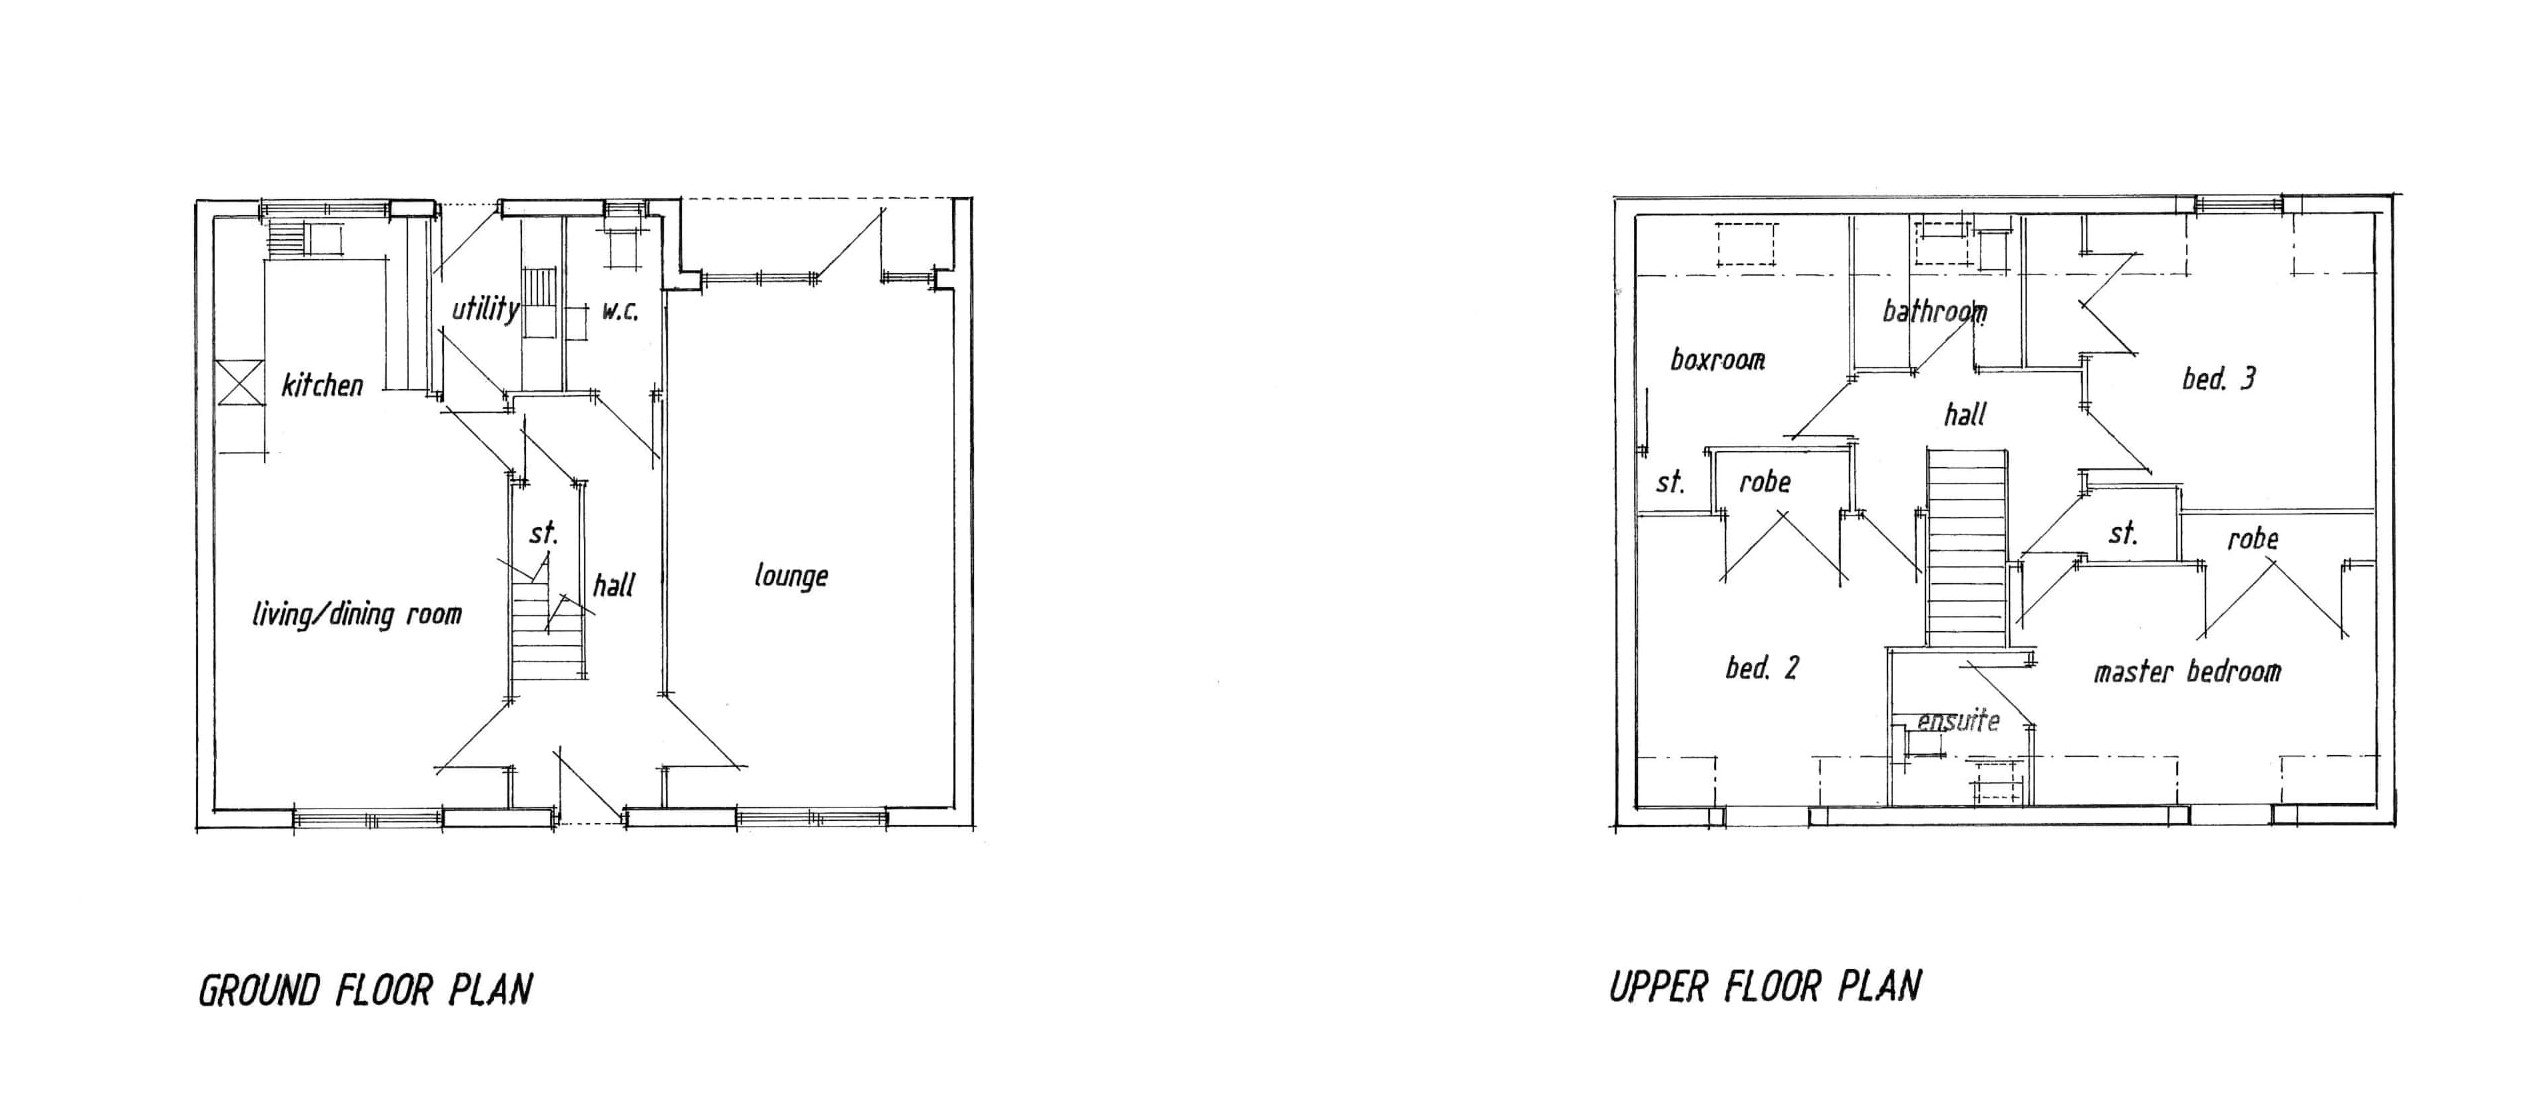 2. Floor Plans